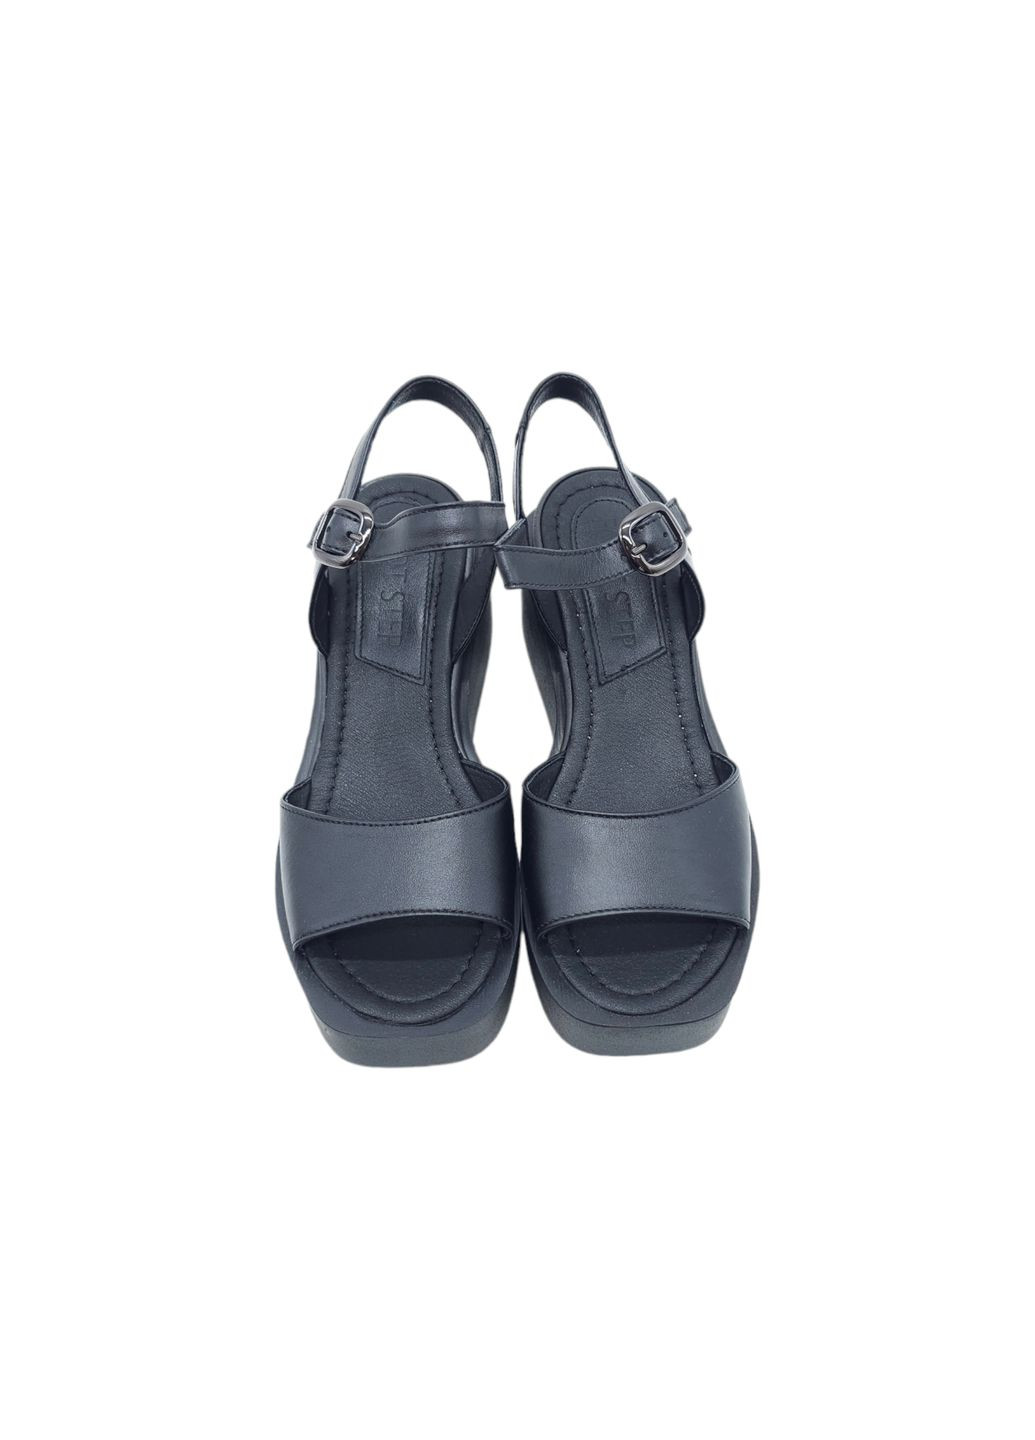 Жіночі босоніжки чорні шкіряні FS-18-23 24,5 см (р) Foot Step (292401637)